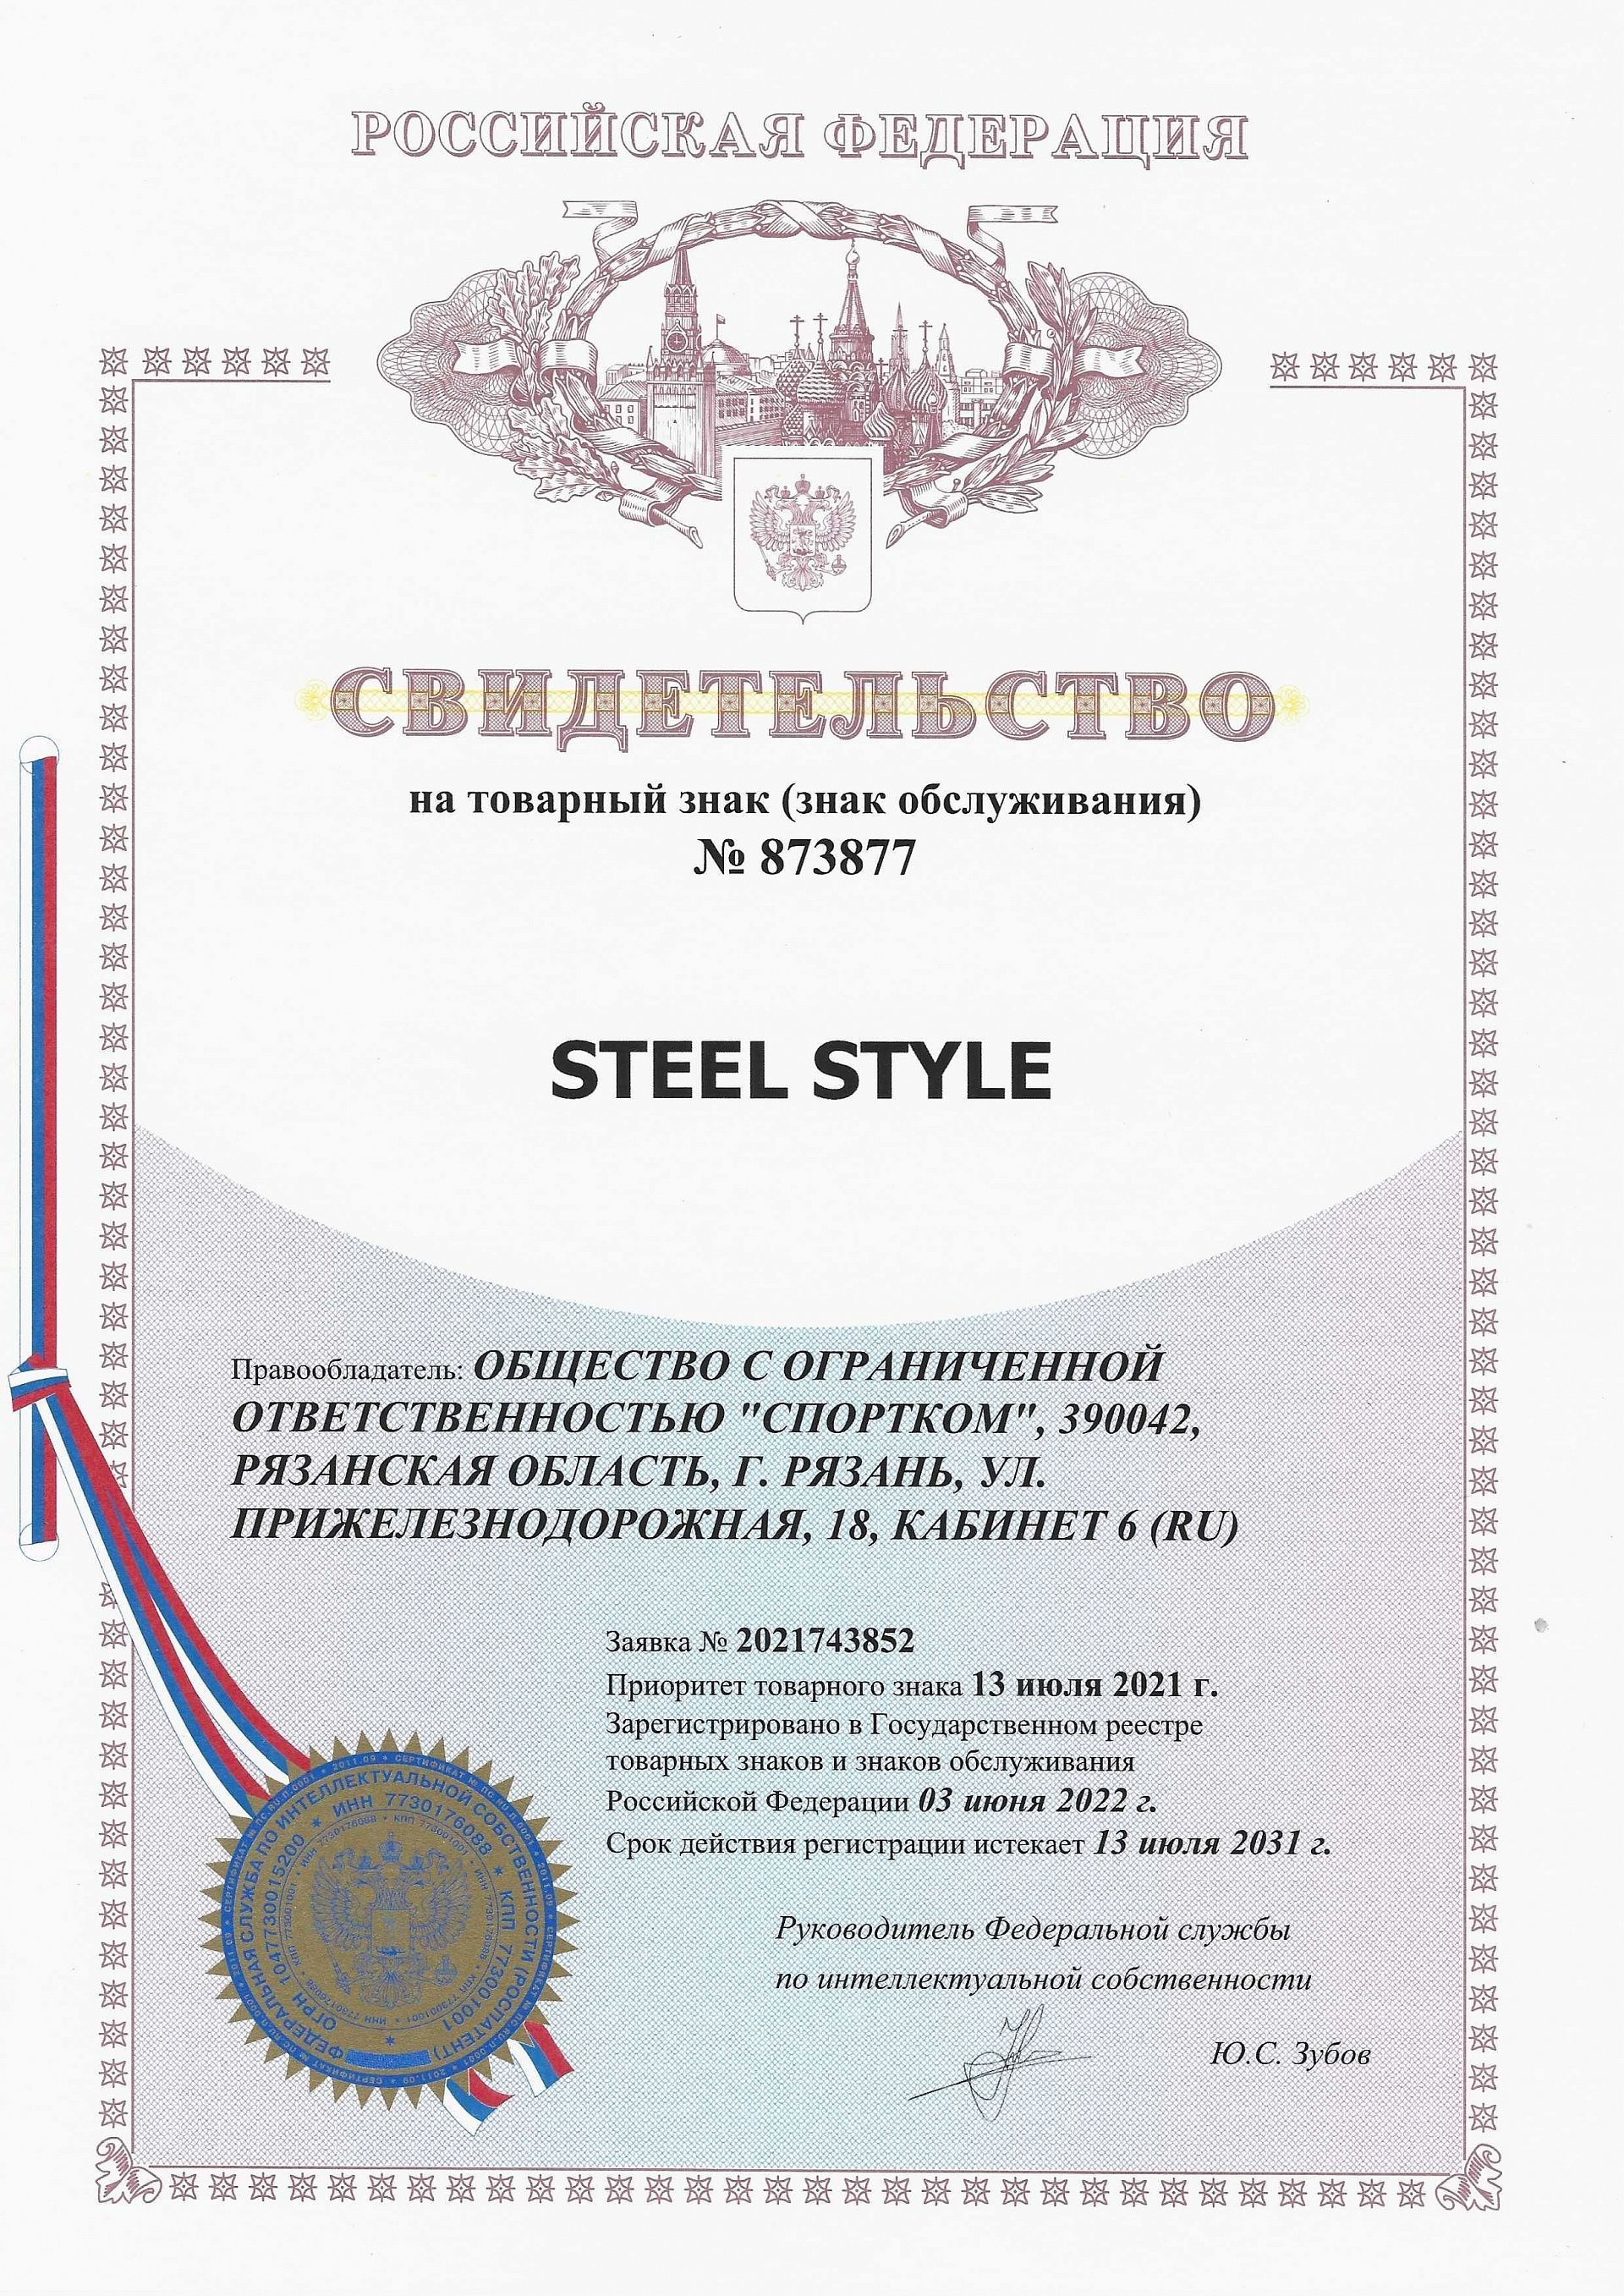 Товарный знак № 873877 – Steel Style